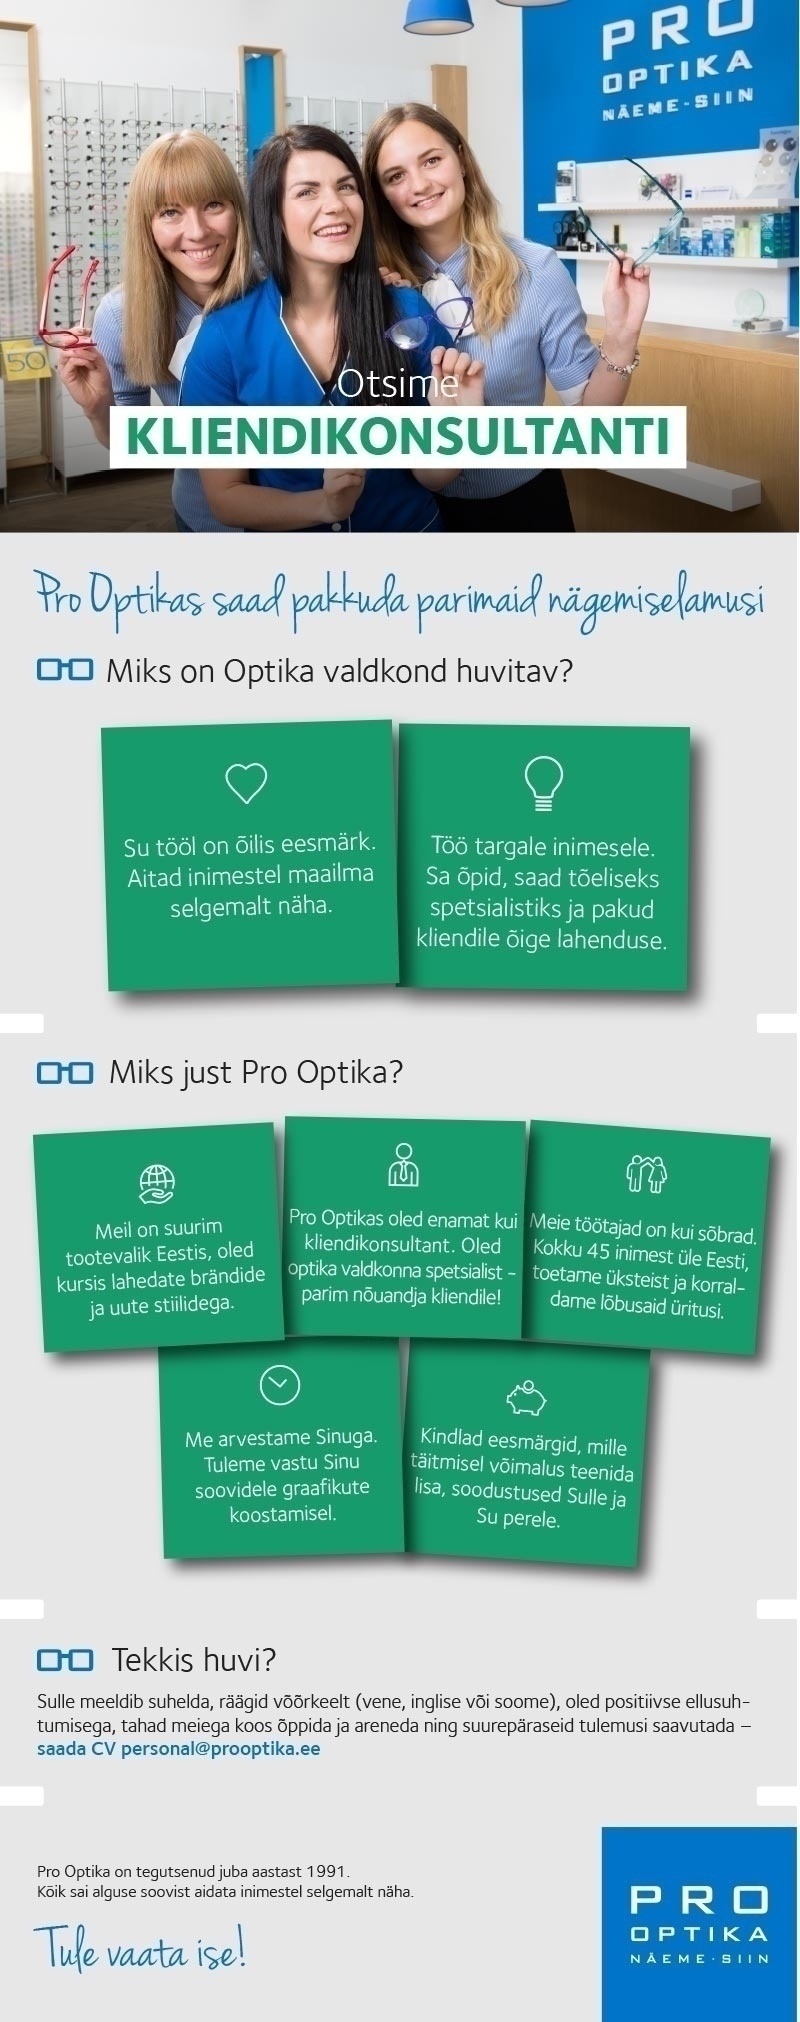 Pro Optika Kliendikonsultant Tallinnas ja Viimsis - saa koos meiega optika valdkonna spetsialistiks!